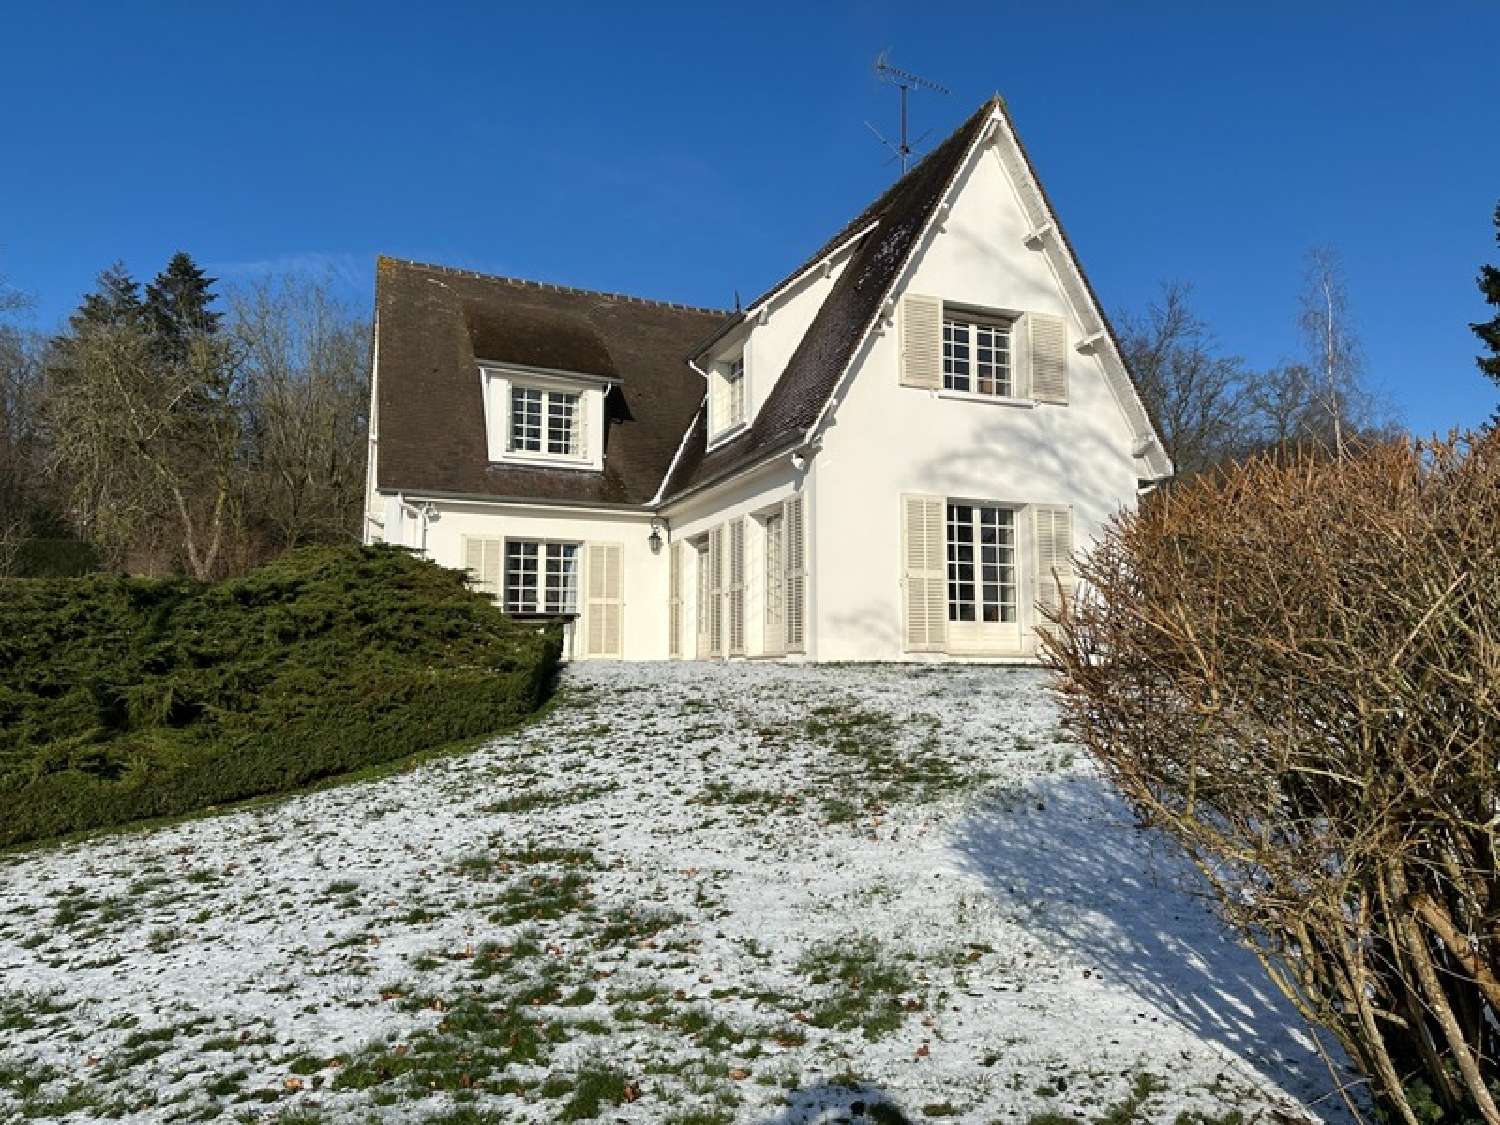  à vendre maison bourgeoise Neauphle-le-Château Yvelines 2